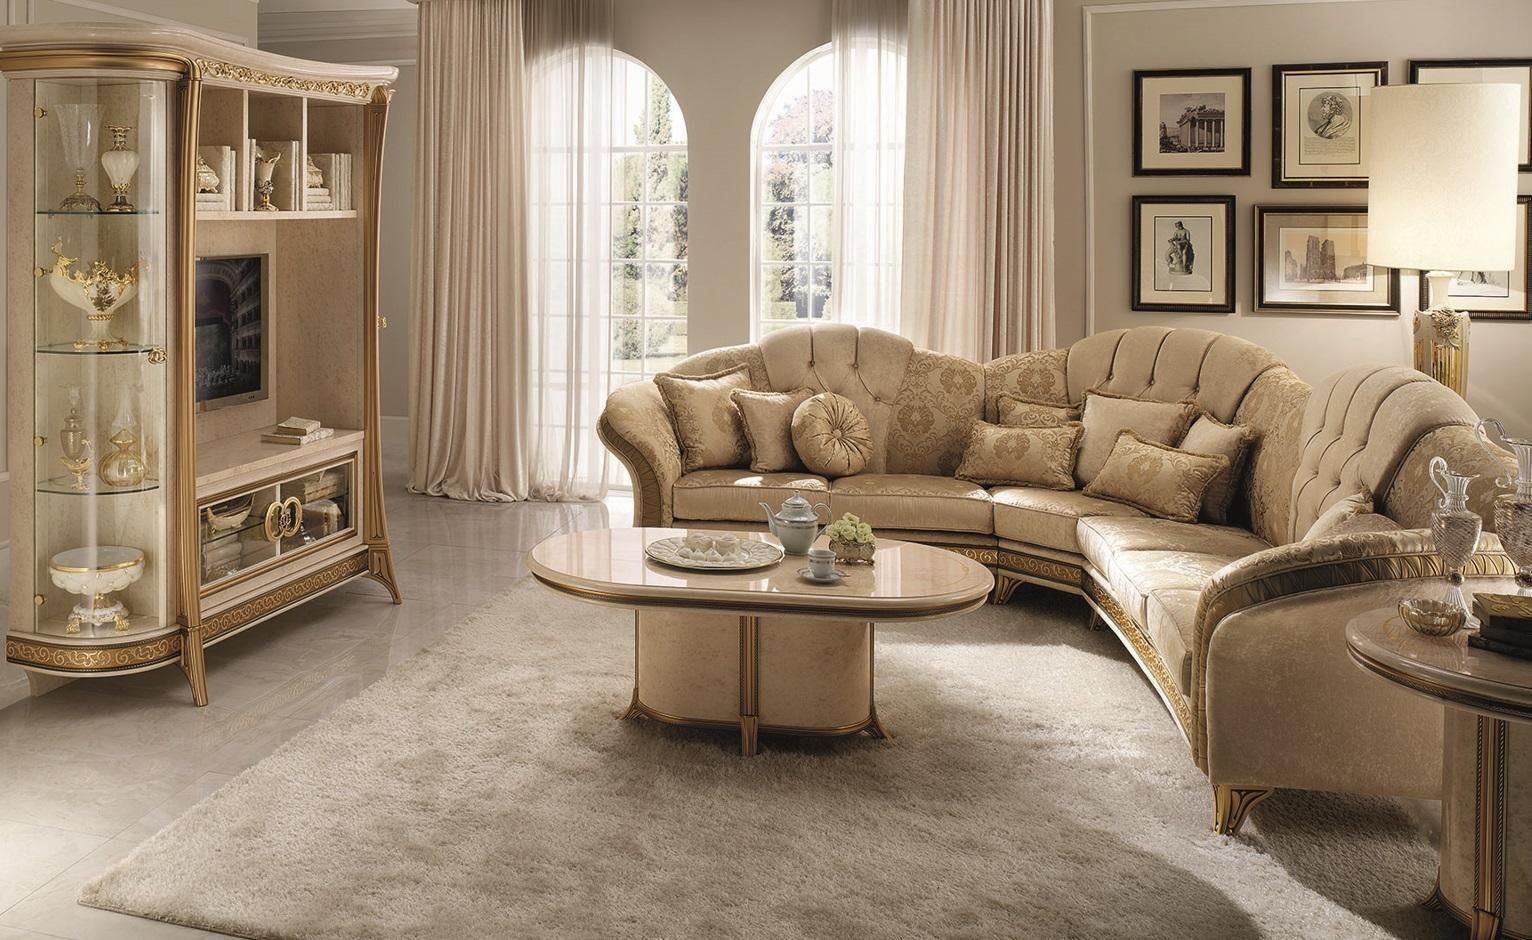 JVmoebel Luxus Neu, in Made Polstermöbel Couch L-Form Modernes Ecksofa Sofa Europe Beiges